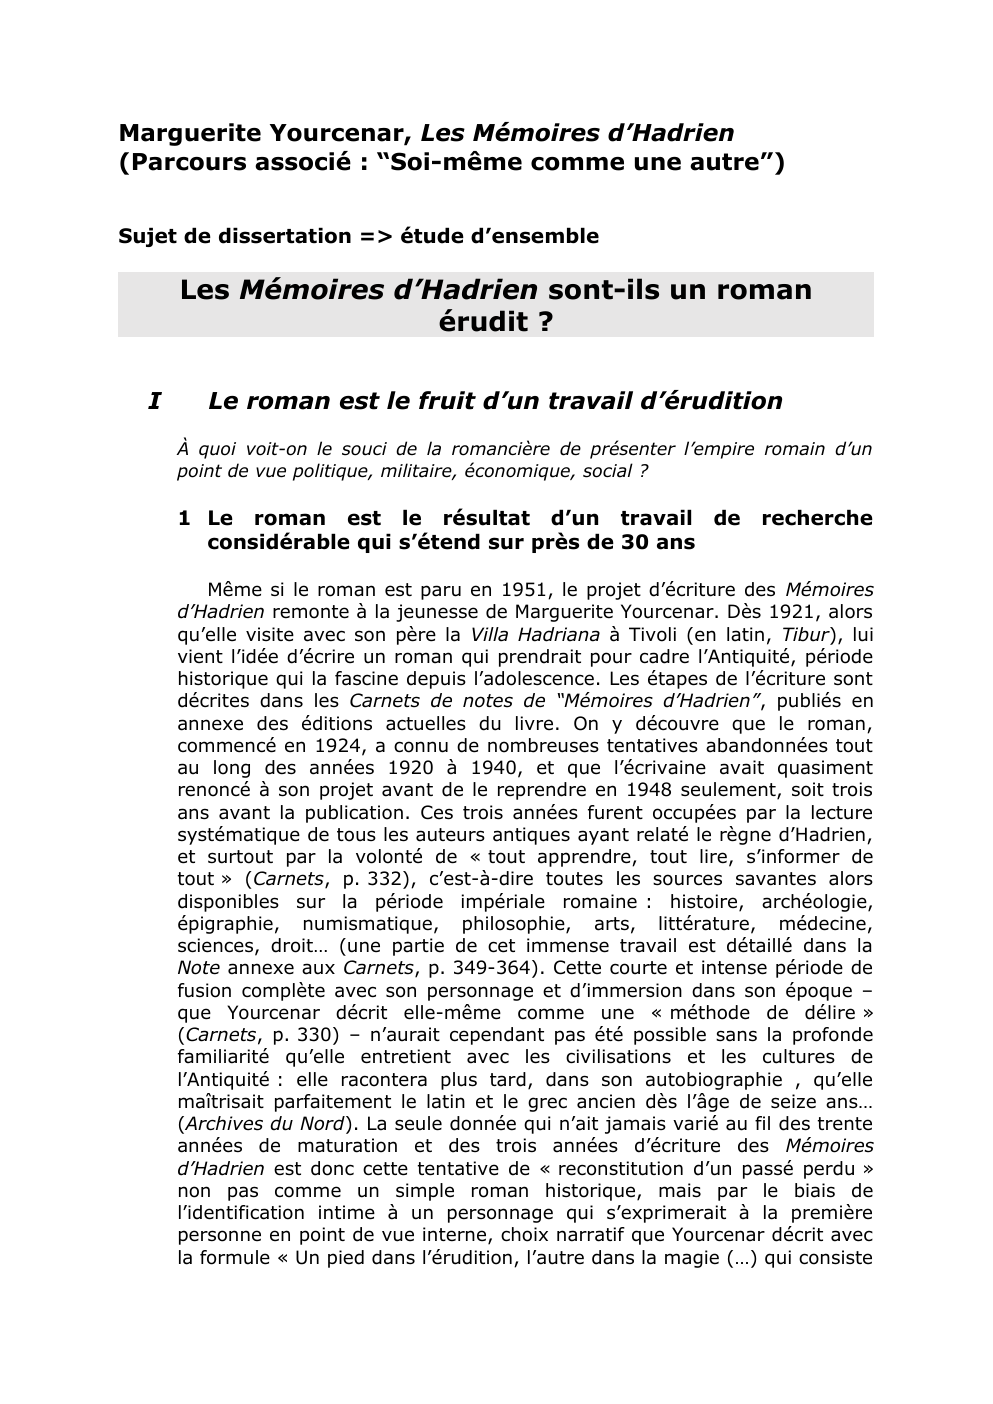 Prévisualisation du document dissertaion mémoire d'hadrien: Les Mémoires d’Hadrien sont-ils un roman érudit ?